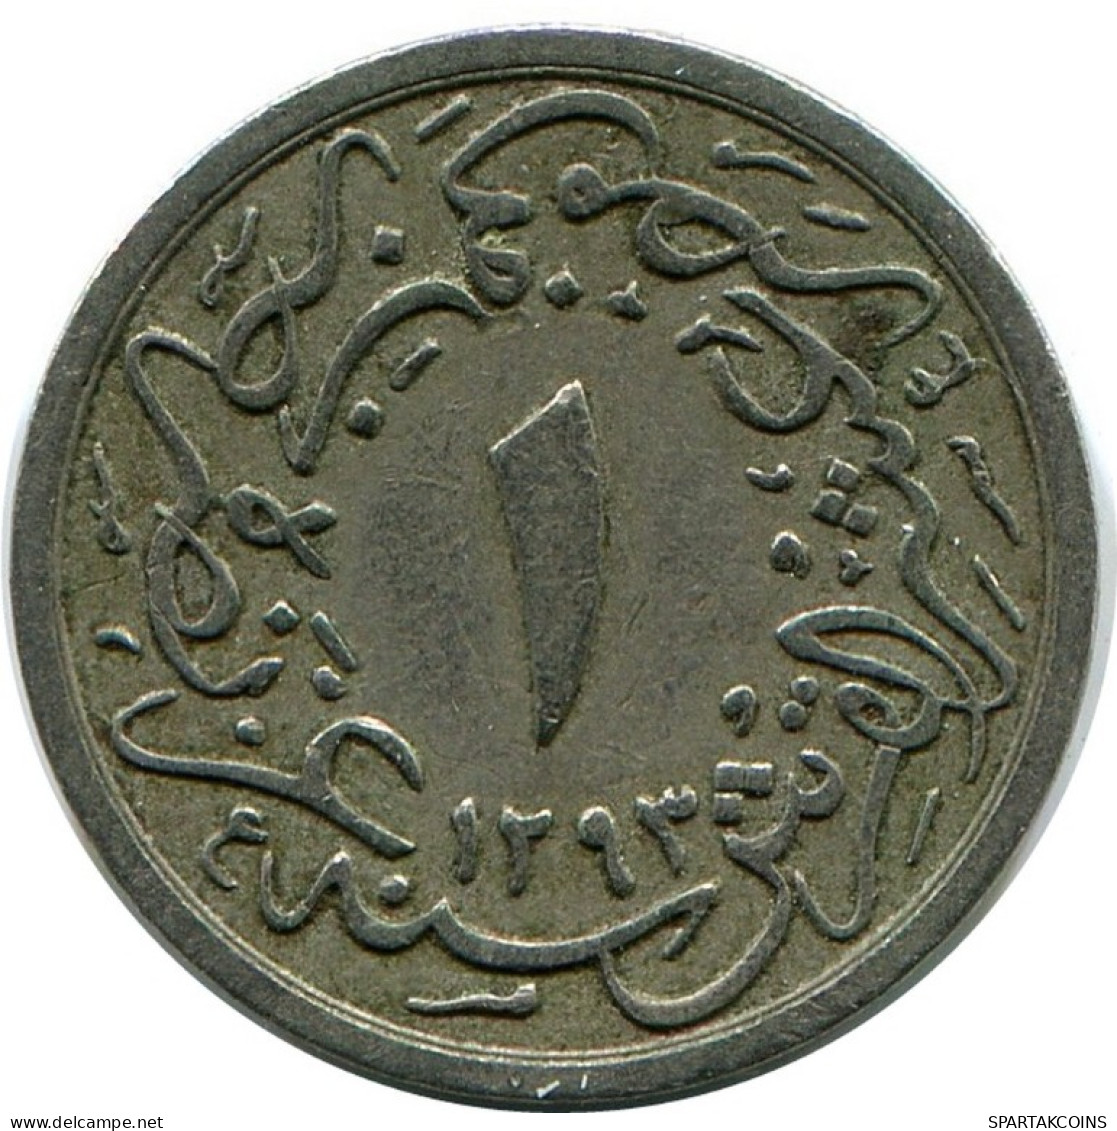 1/10 QIRSH 1898 EGYPTE EGYPT Islamique Pièce #AK341.F.A - Aegypten